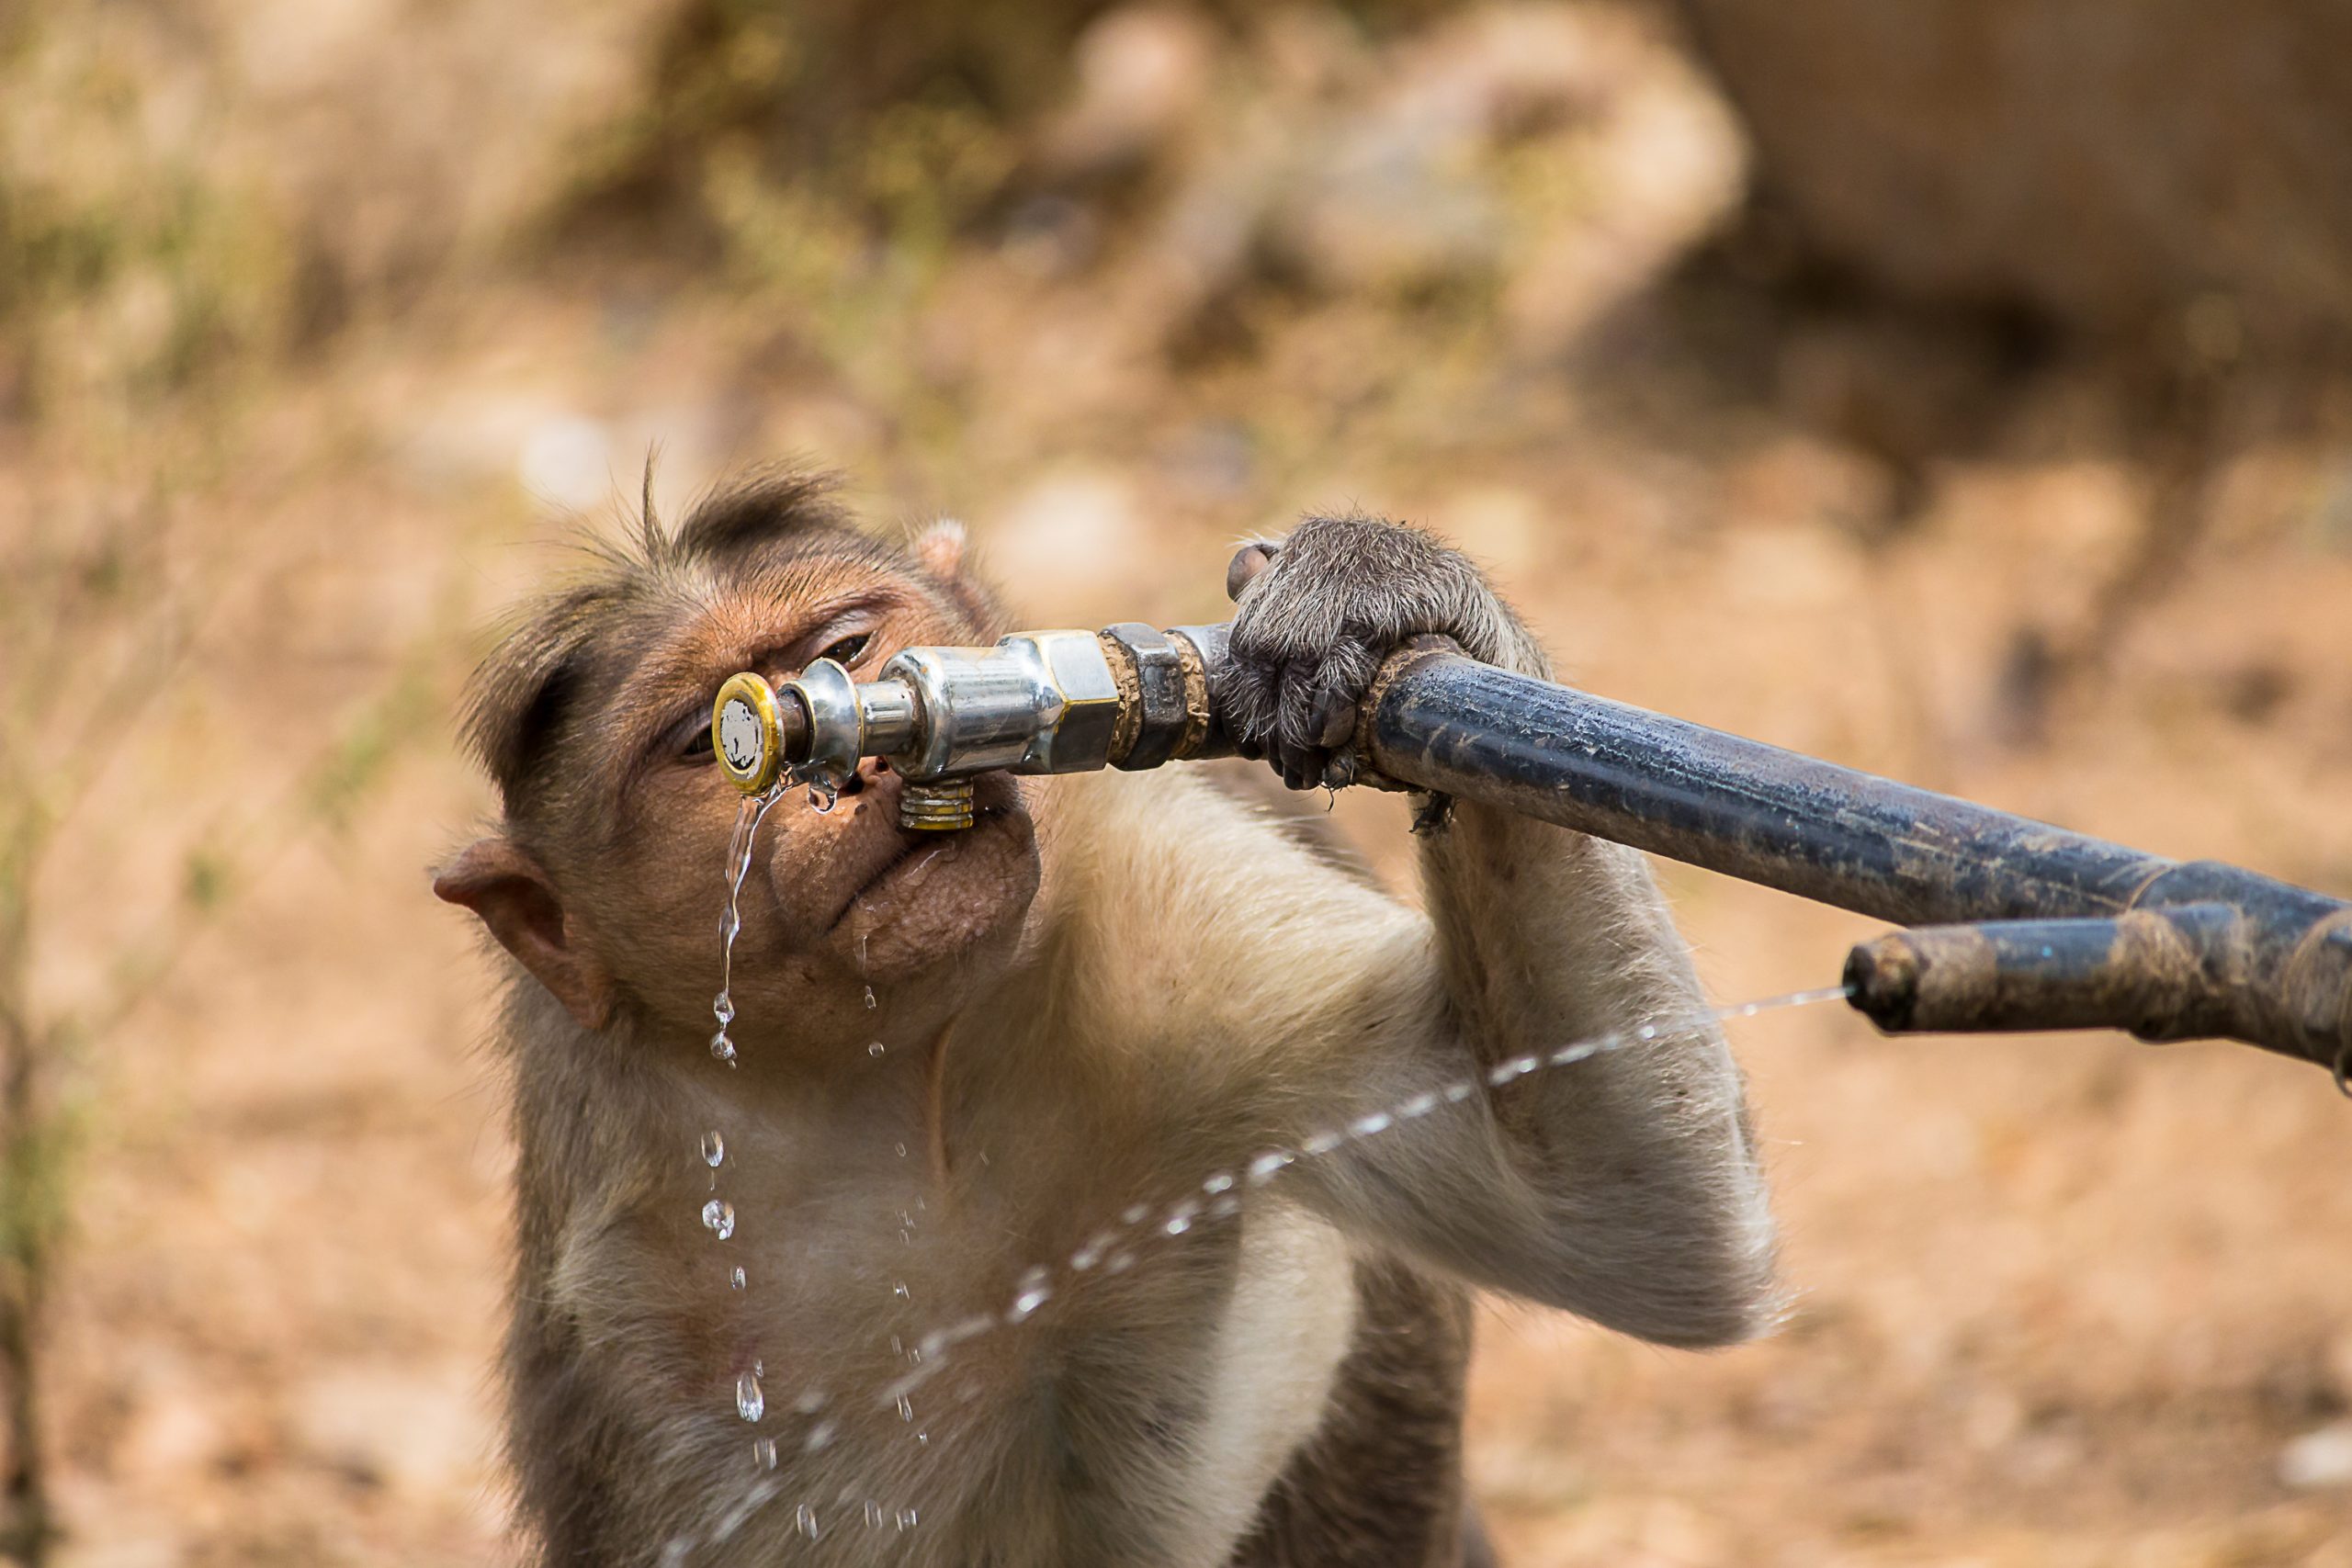 Monkey Drinking Water through water tap